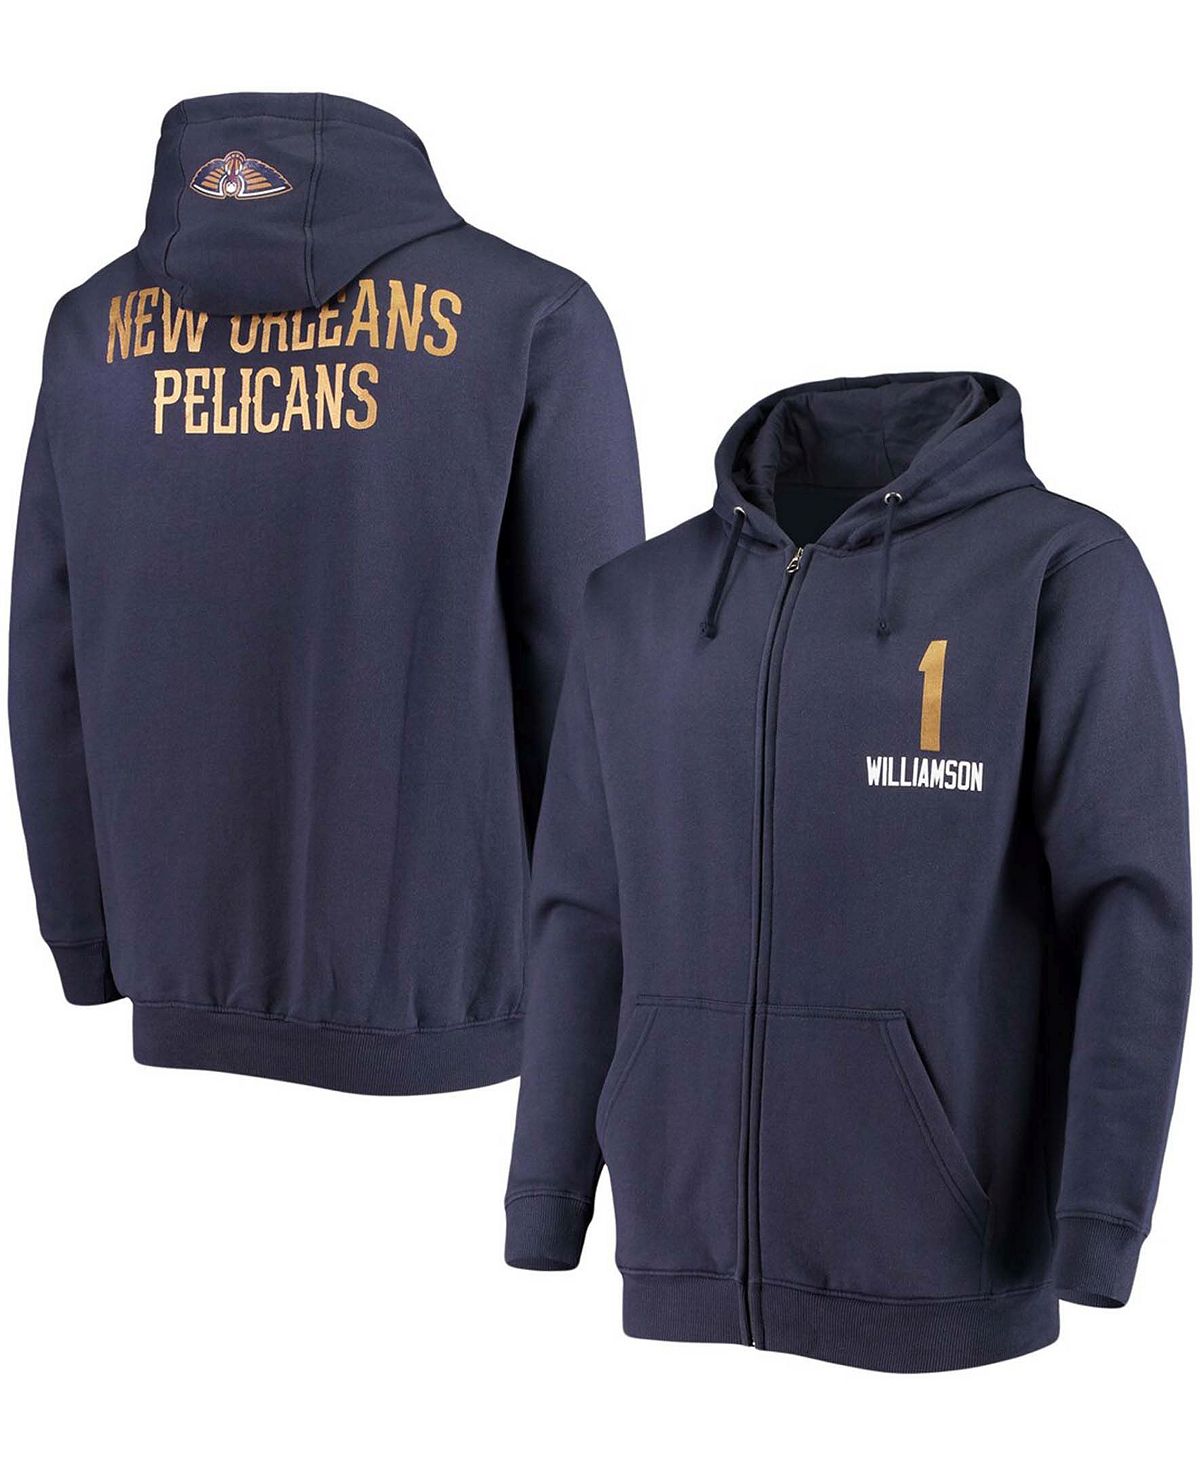 Мужская куртка zion williamson navy new orleans pelicans с именем и номером игрока с капюшоном на молнии во всю длину Fanatics, синий